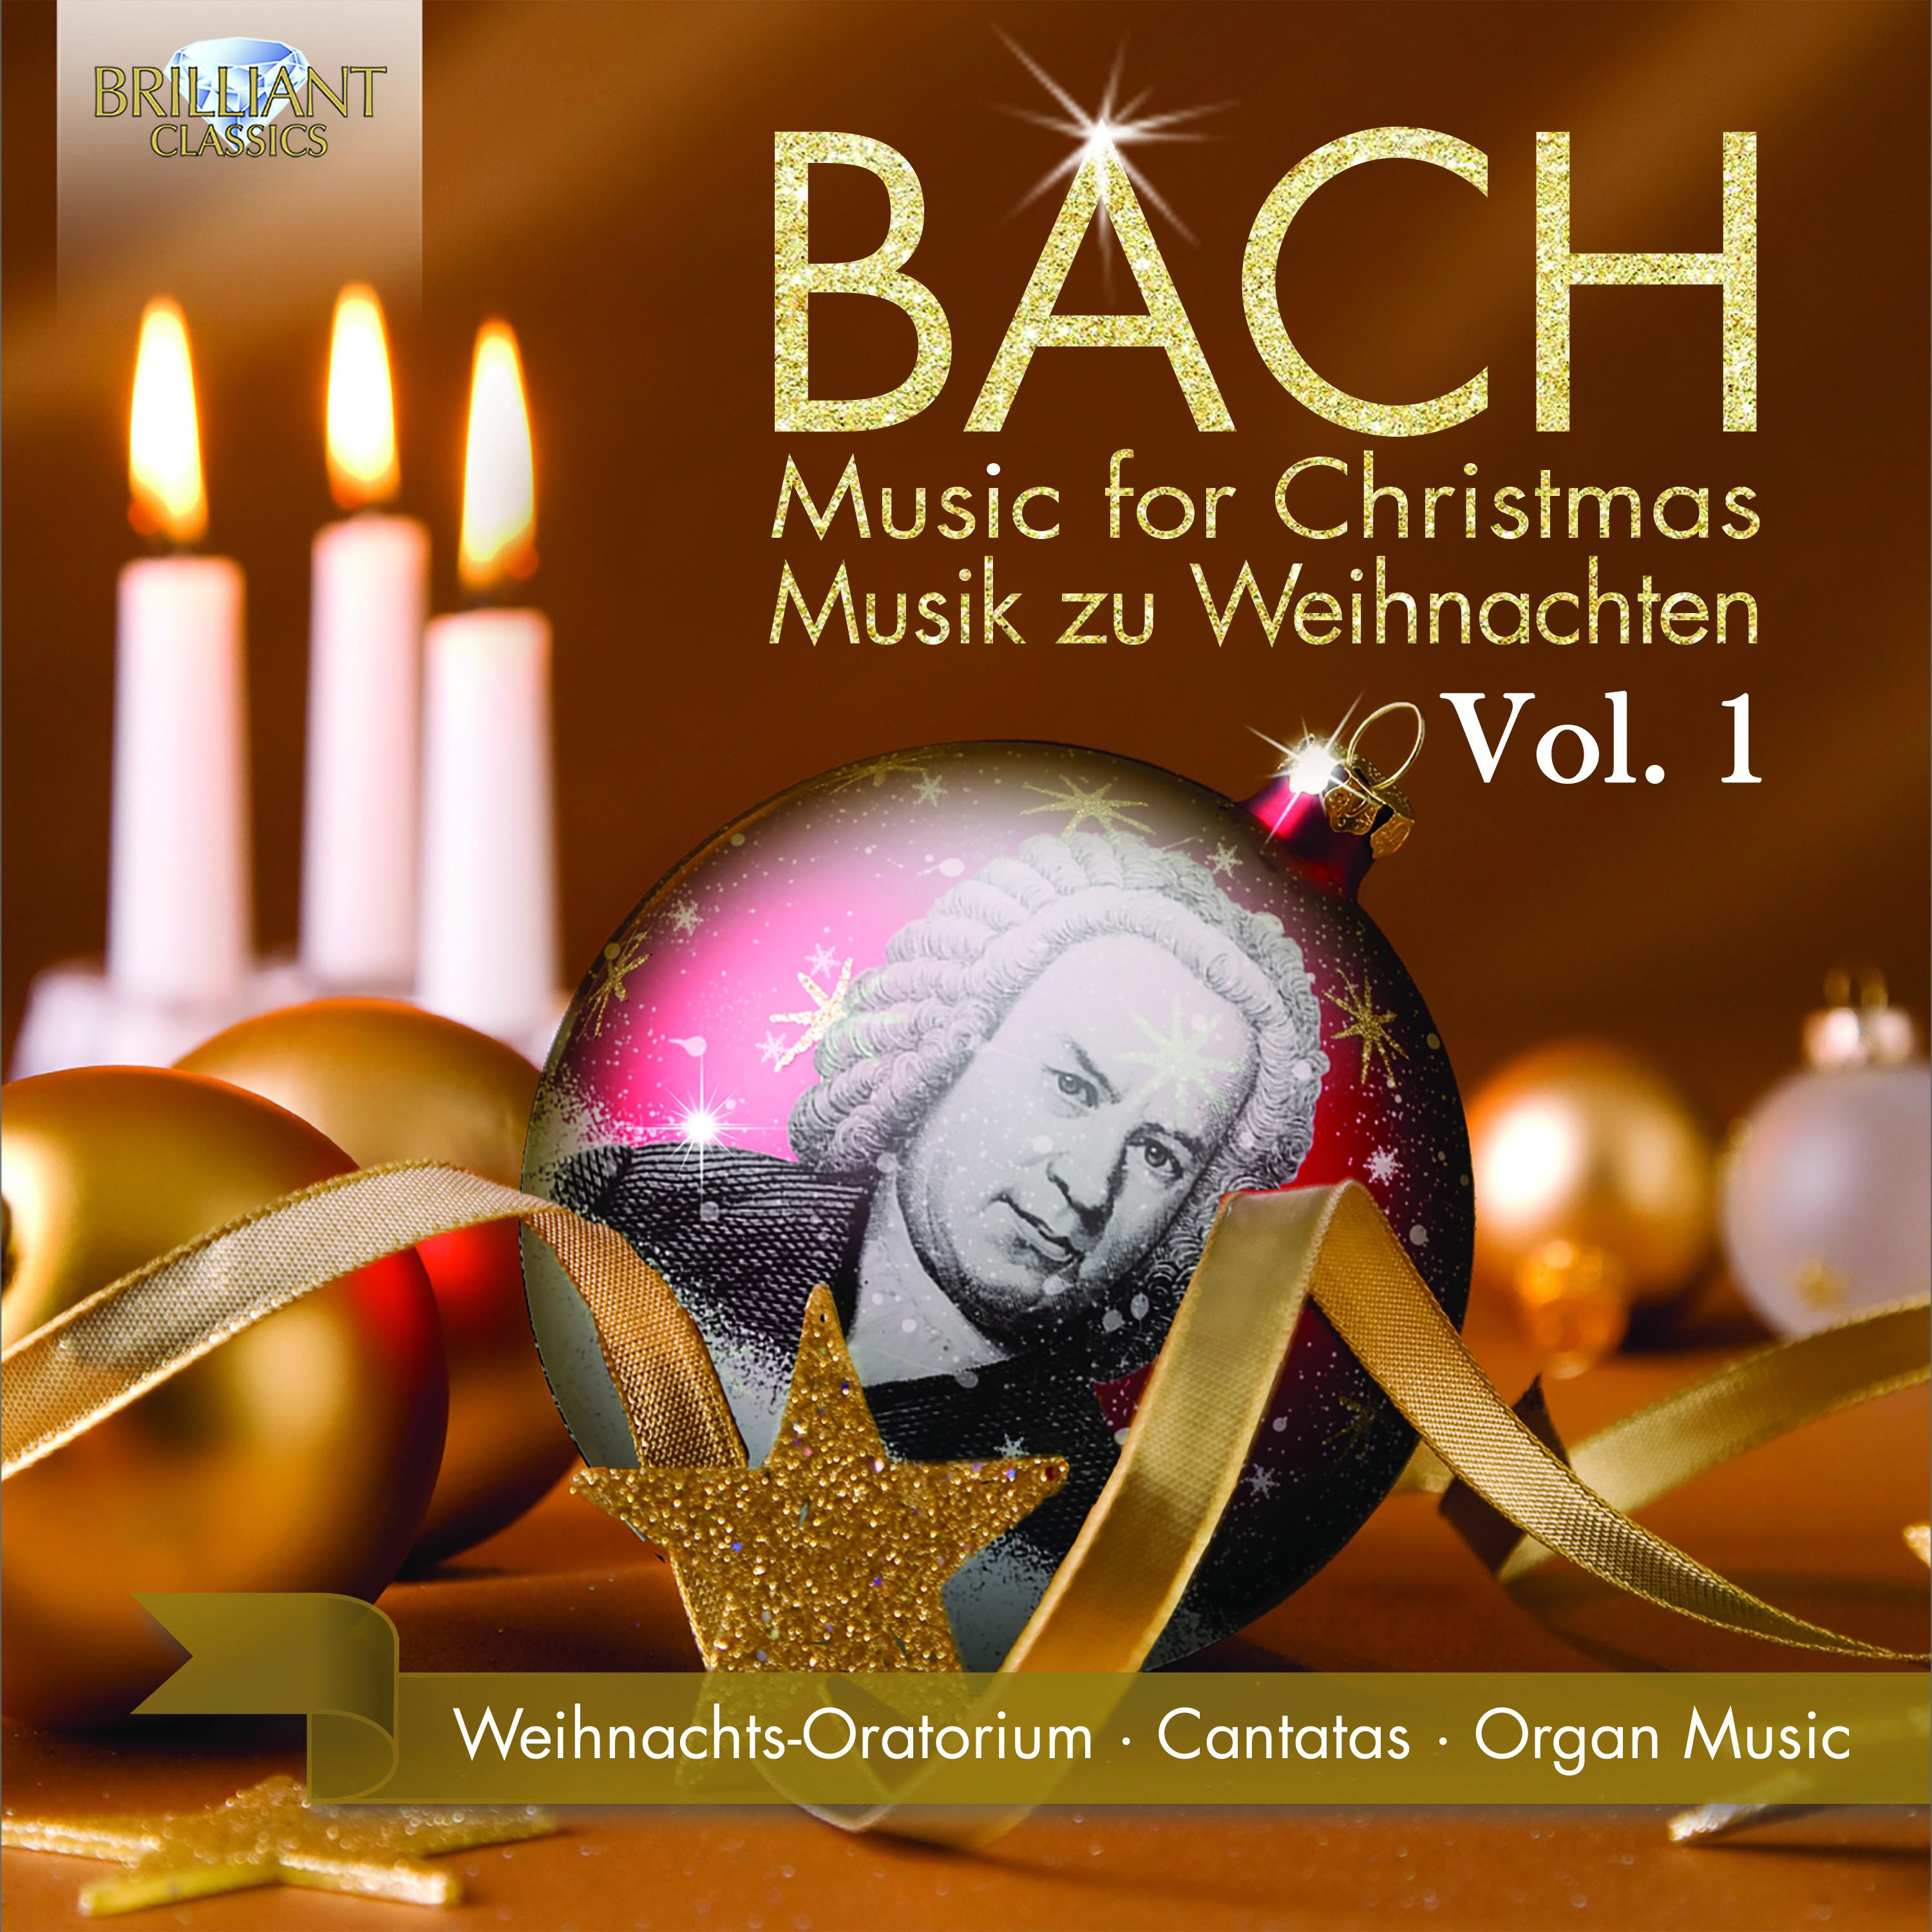 Christmas Oratorio, BWV 248, Pt. 5: IX. Trio. Ach, wenn wird die Zeit erscheinen? (Soprano, Alto, Tenor)